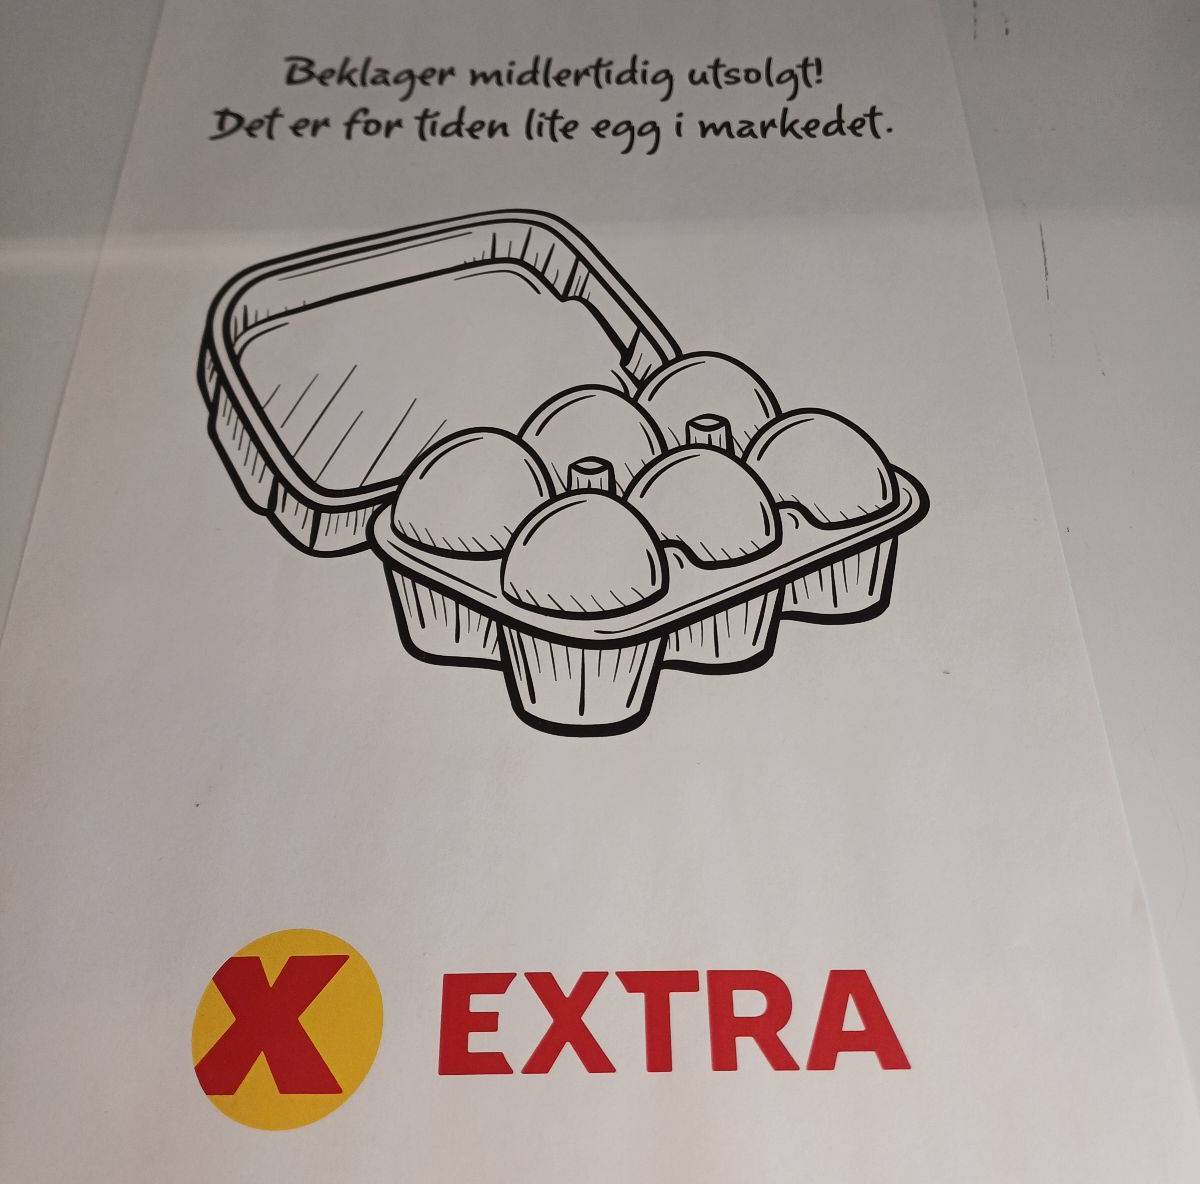 Extra eggs notice